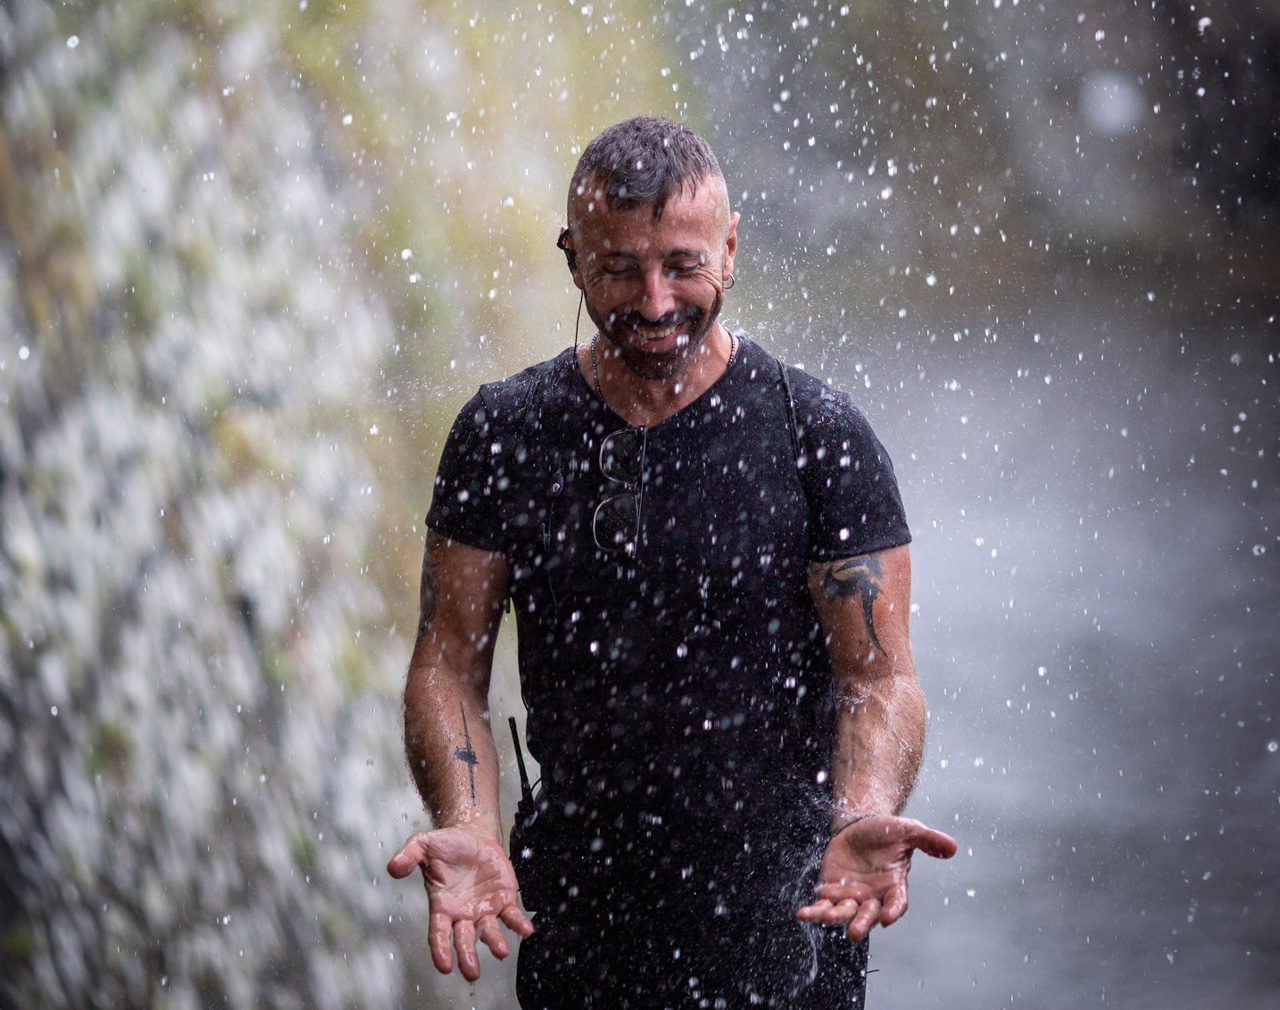 Giovanni Raspante dancing in the rain